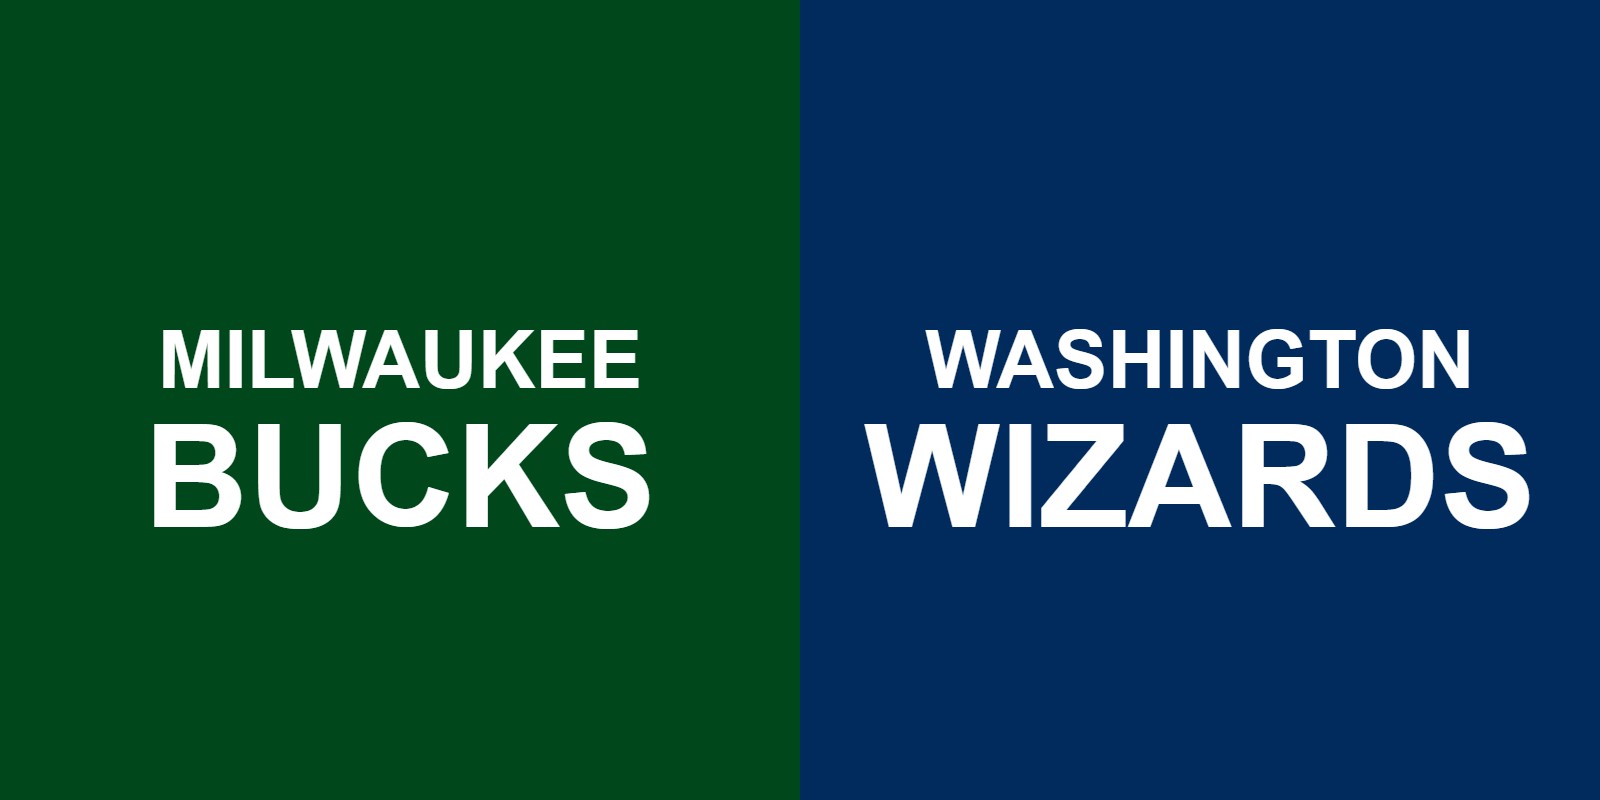 Bucks vs Wizards